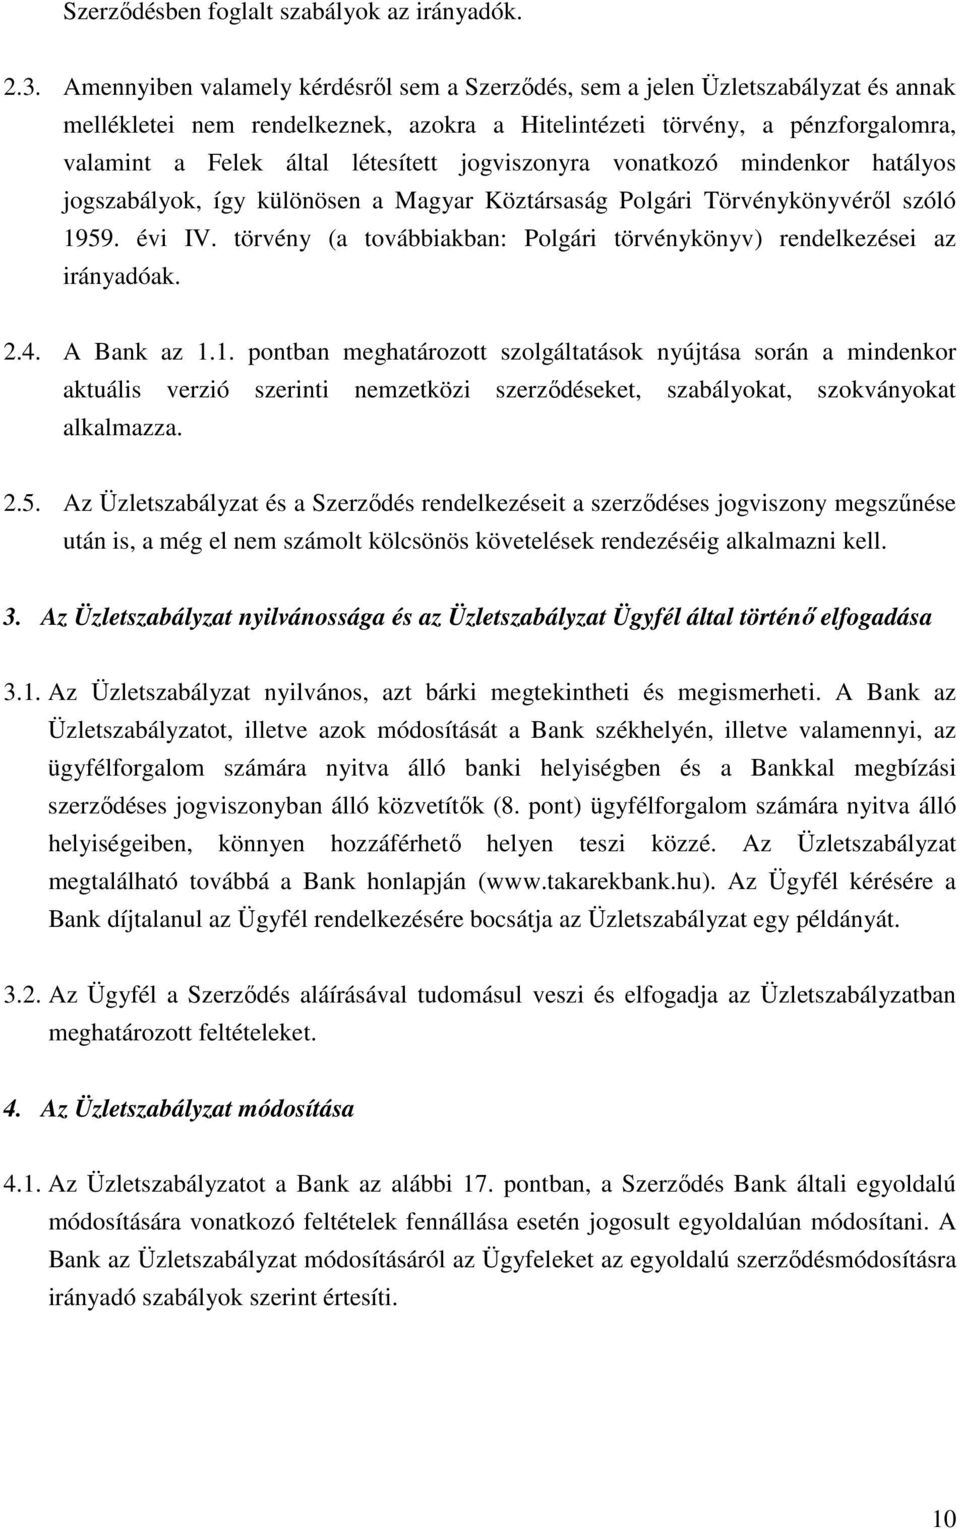 jogviszonyra vonatkozó mindenkor hatályos jogszabályok, így különösen a Magyar Köztársaság Polgári Törvénykönyvéről szóló 1959. évi IV.